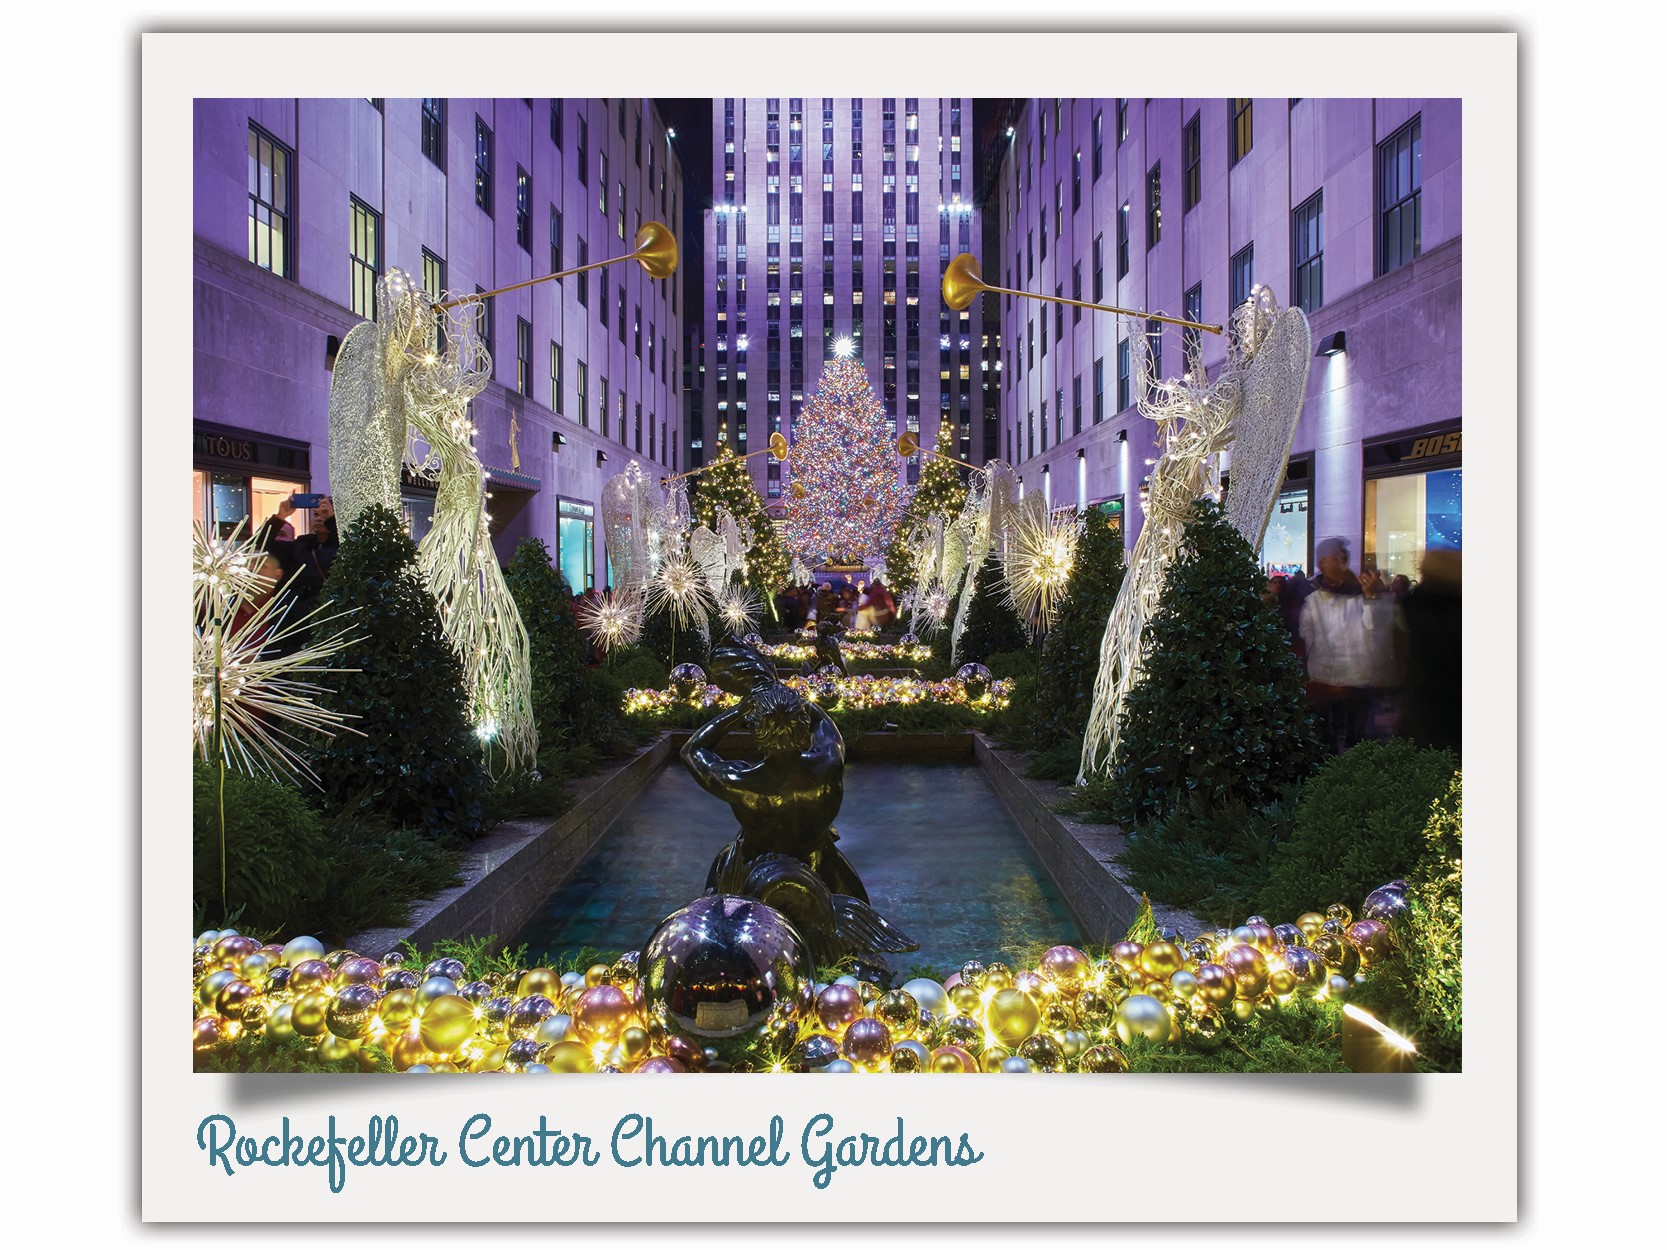 Rockefeller Center Channel Gardens